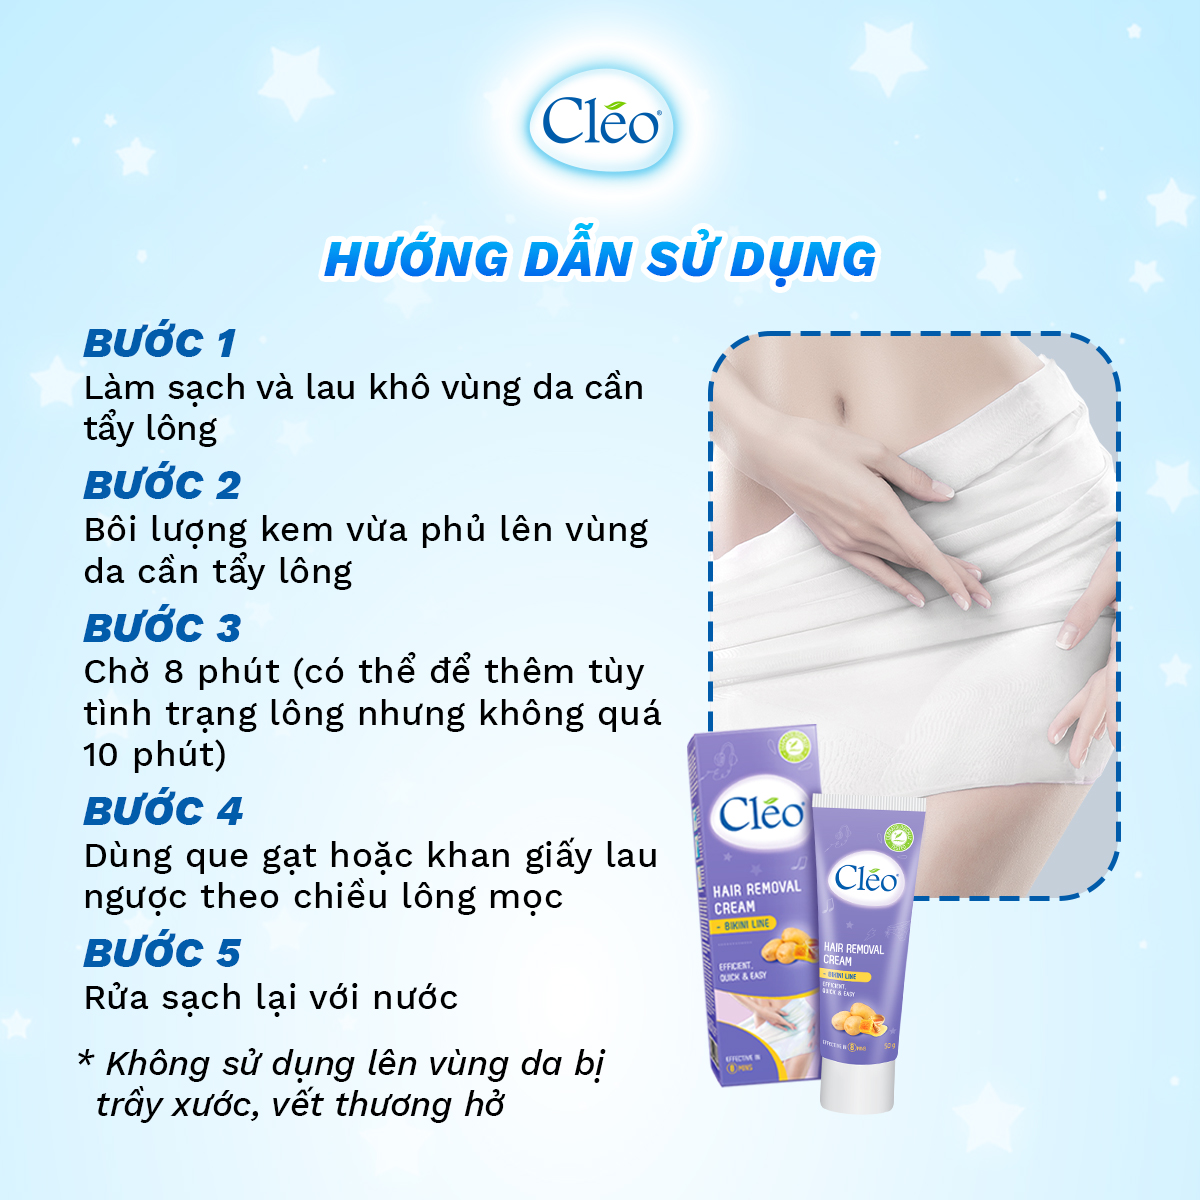 Combo tẩy lông Bikini Cléo, an toàn, không đau rát, hiệu quả trong 8 phút 50g và tẩy lông nách Cléo cho da thường 50g